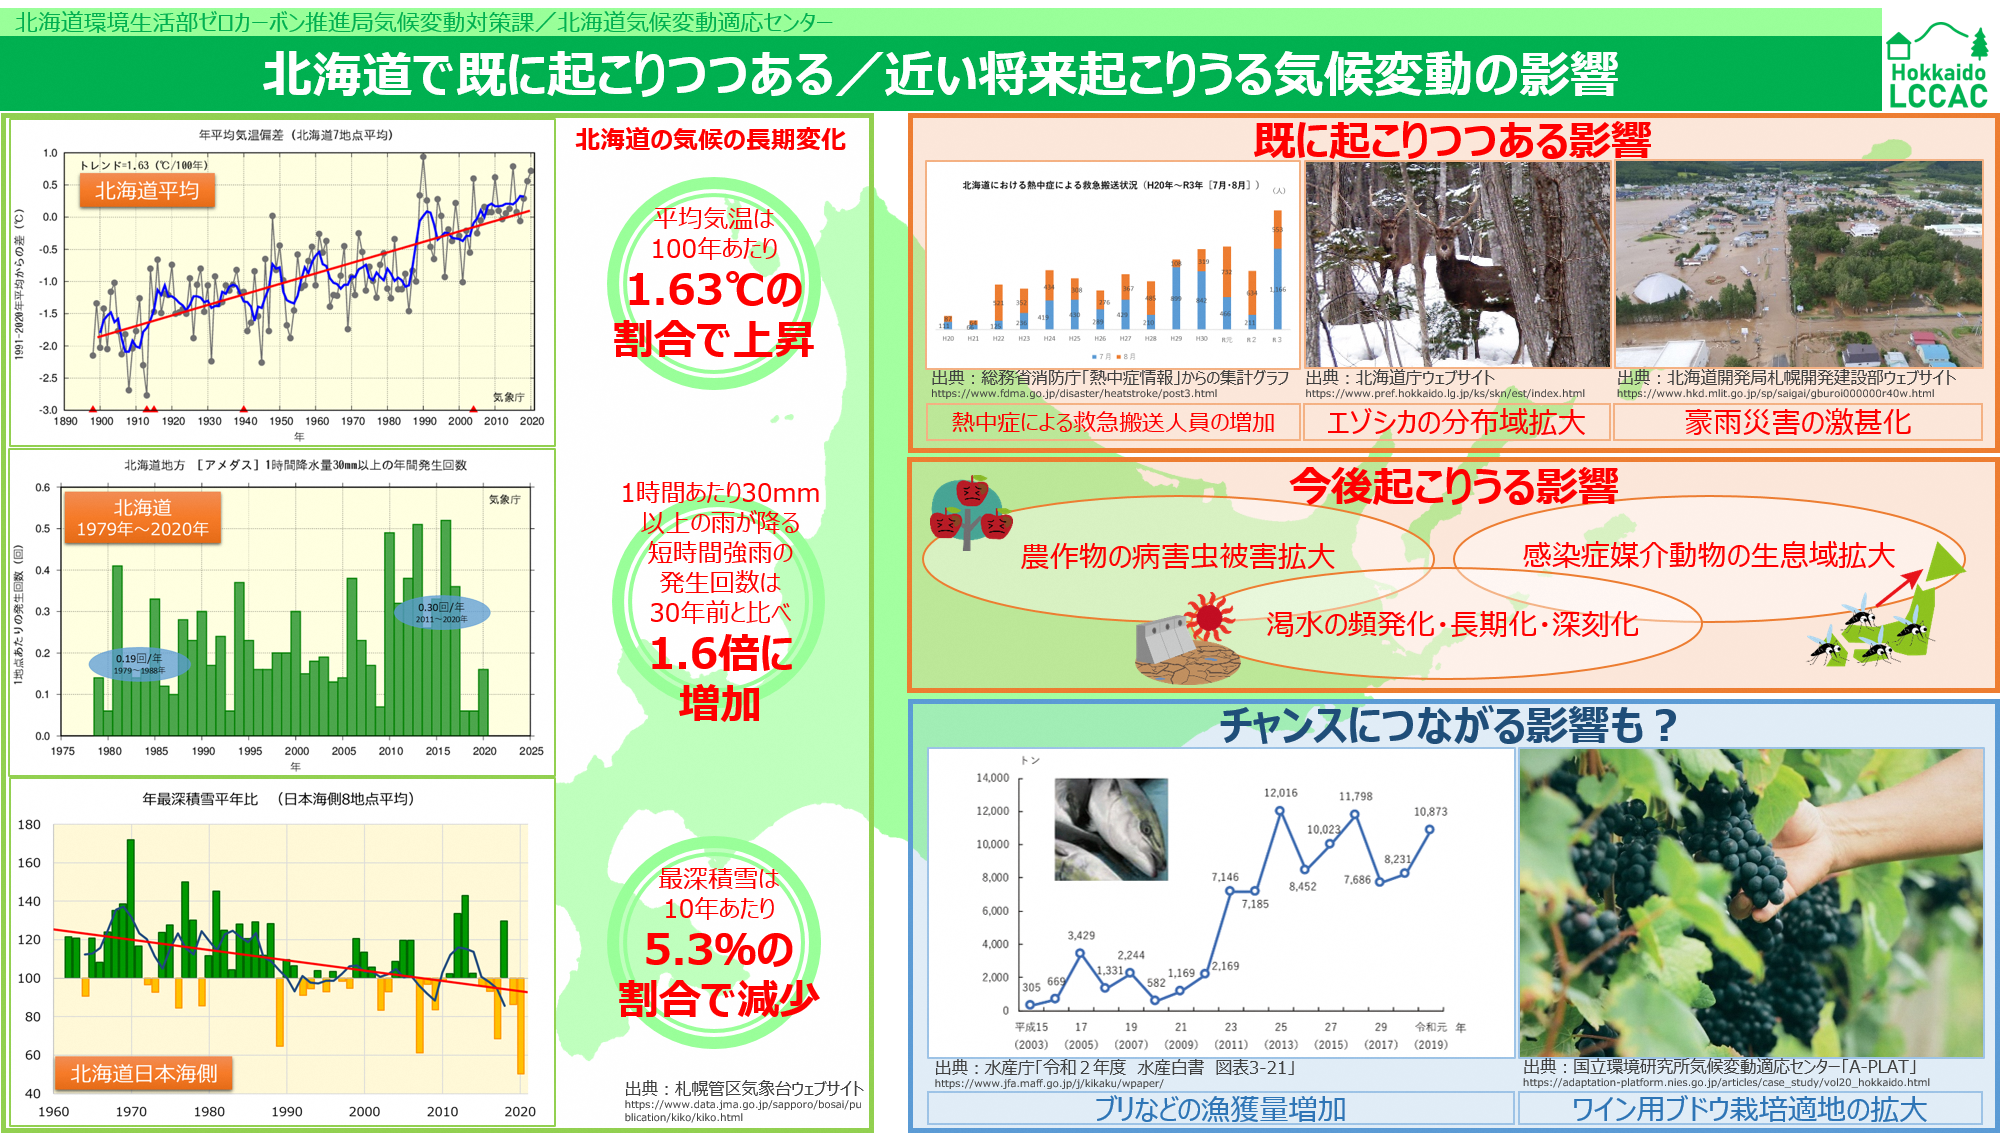 北海道で既に起こりつつある_近い将来起こりうる気候変動の影響.png